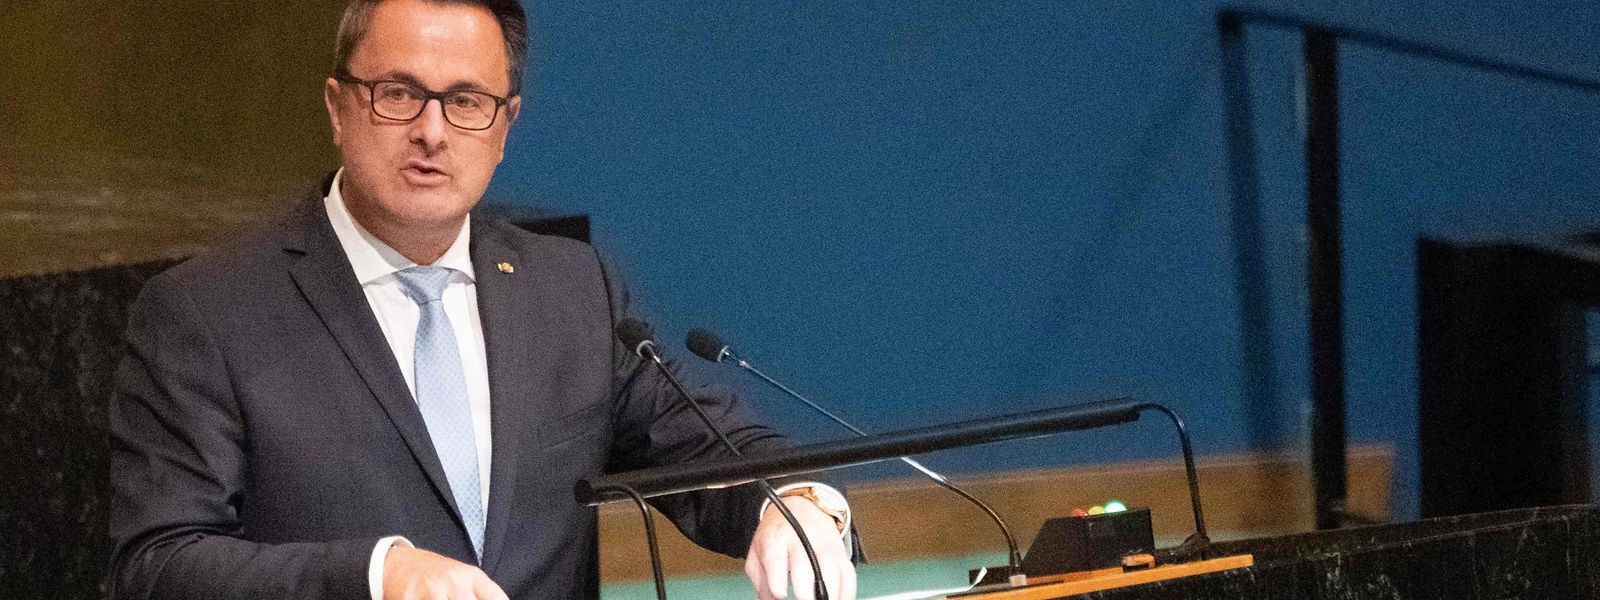 Xavier Bettel sprach am Freitag zur UN-Generalversammlung.